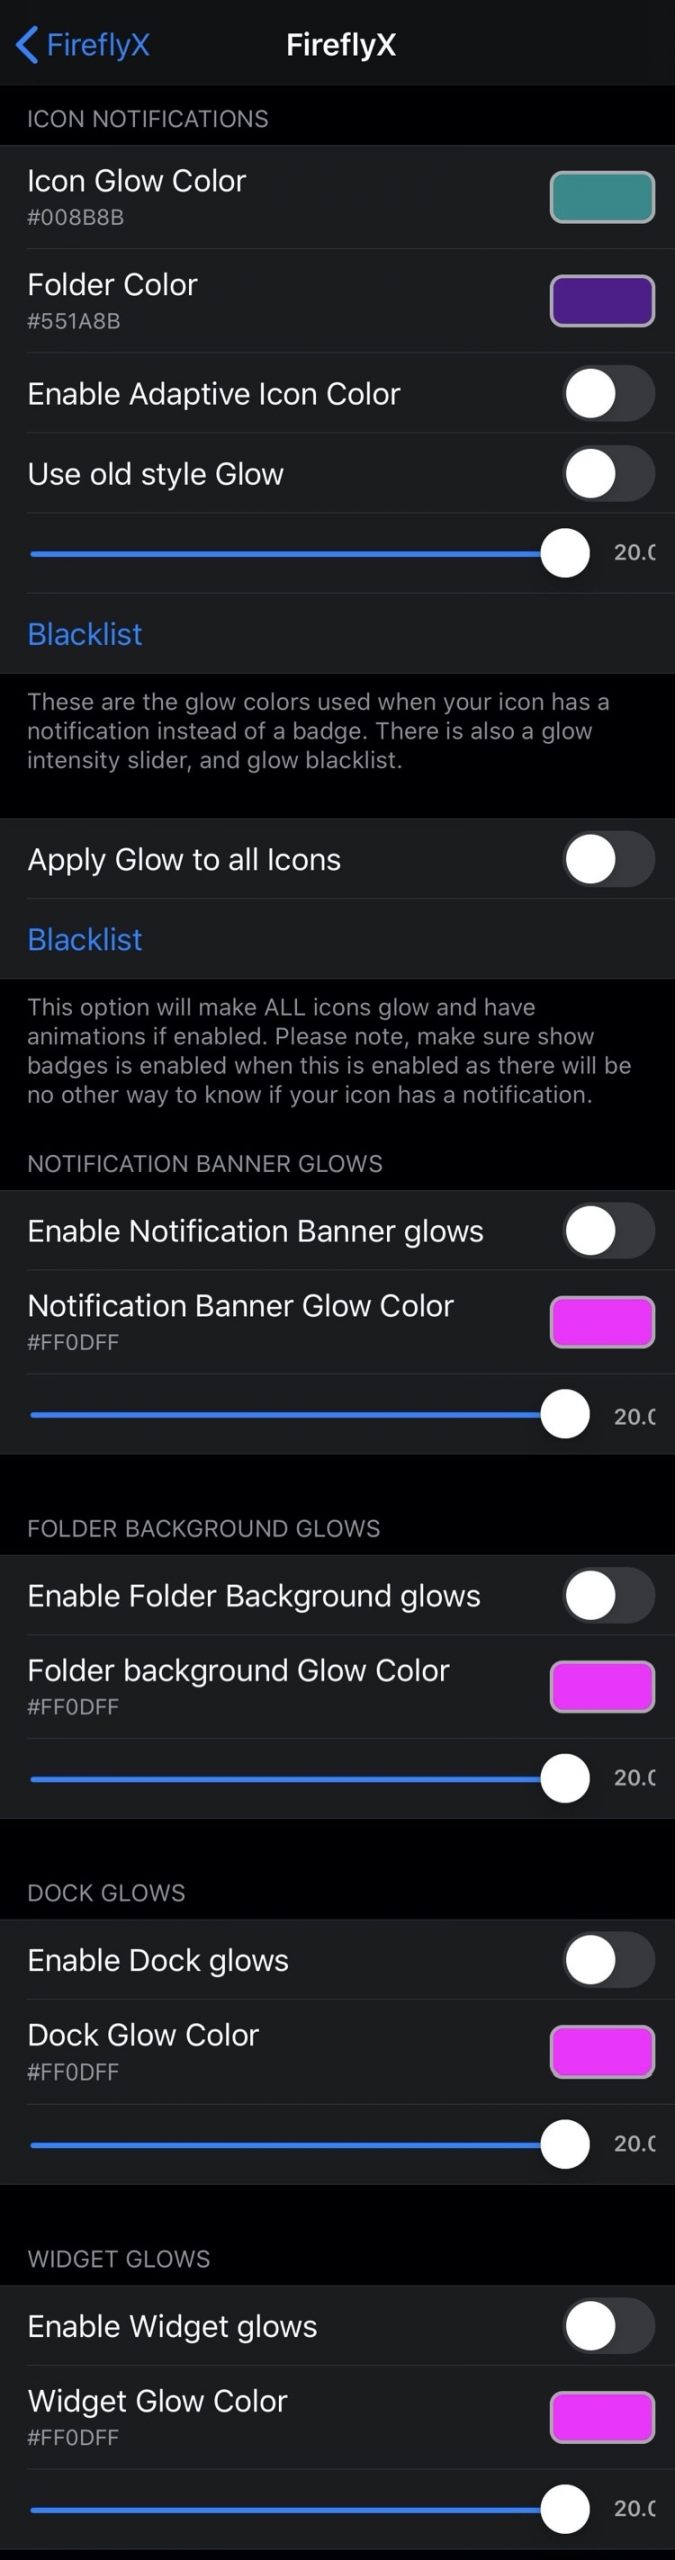 Dale a tu iPhone una estética única con FireflyX 5